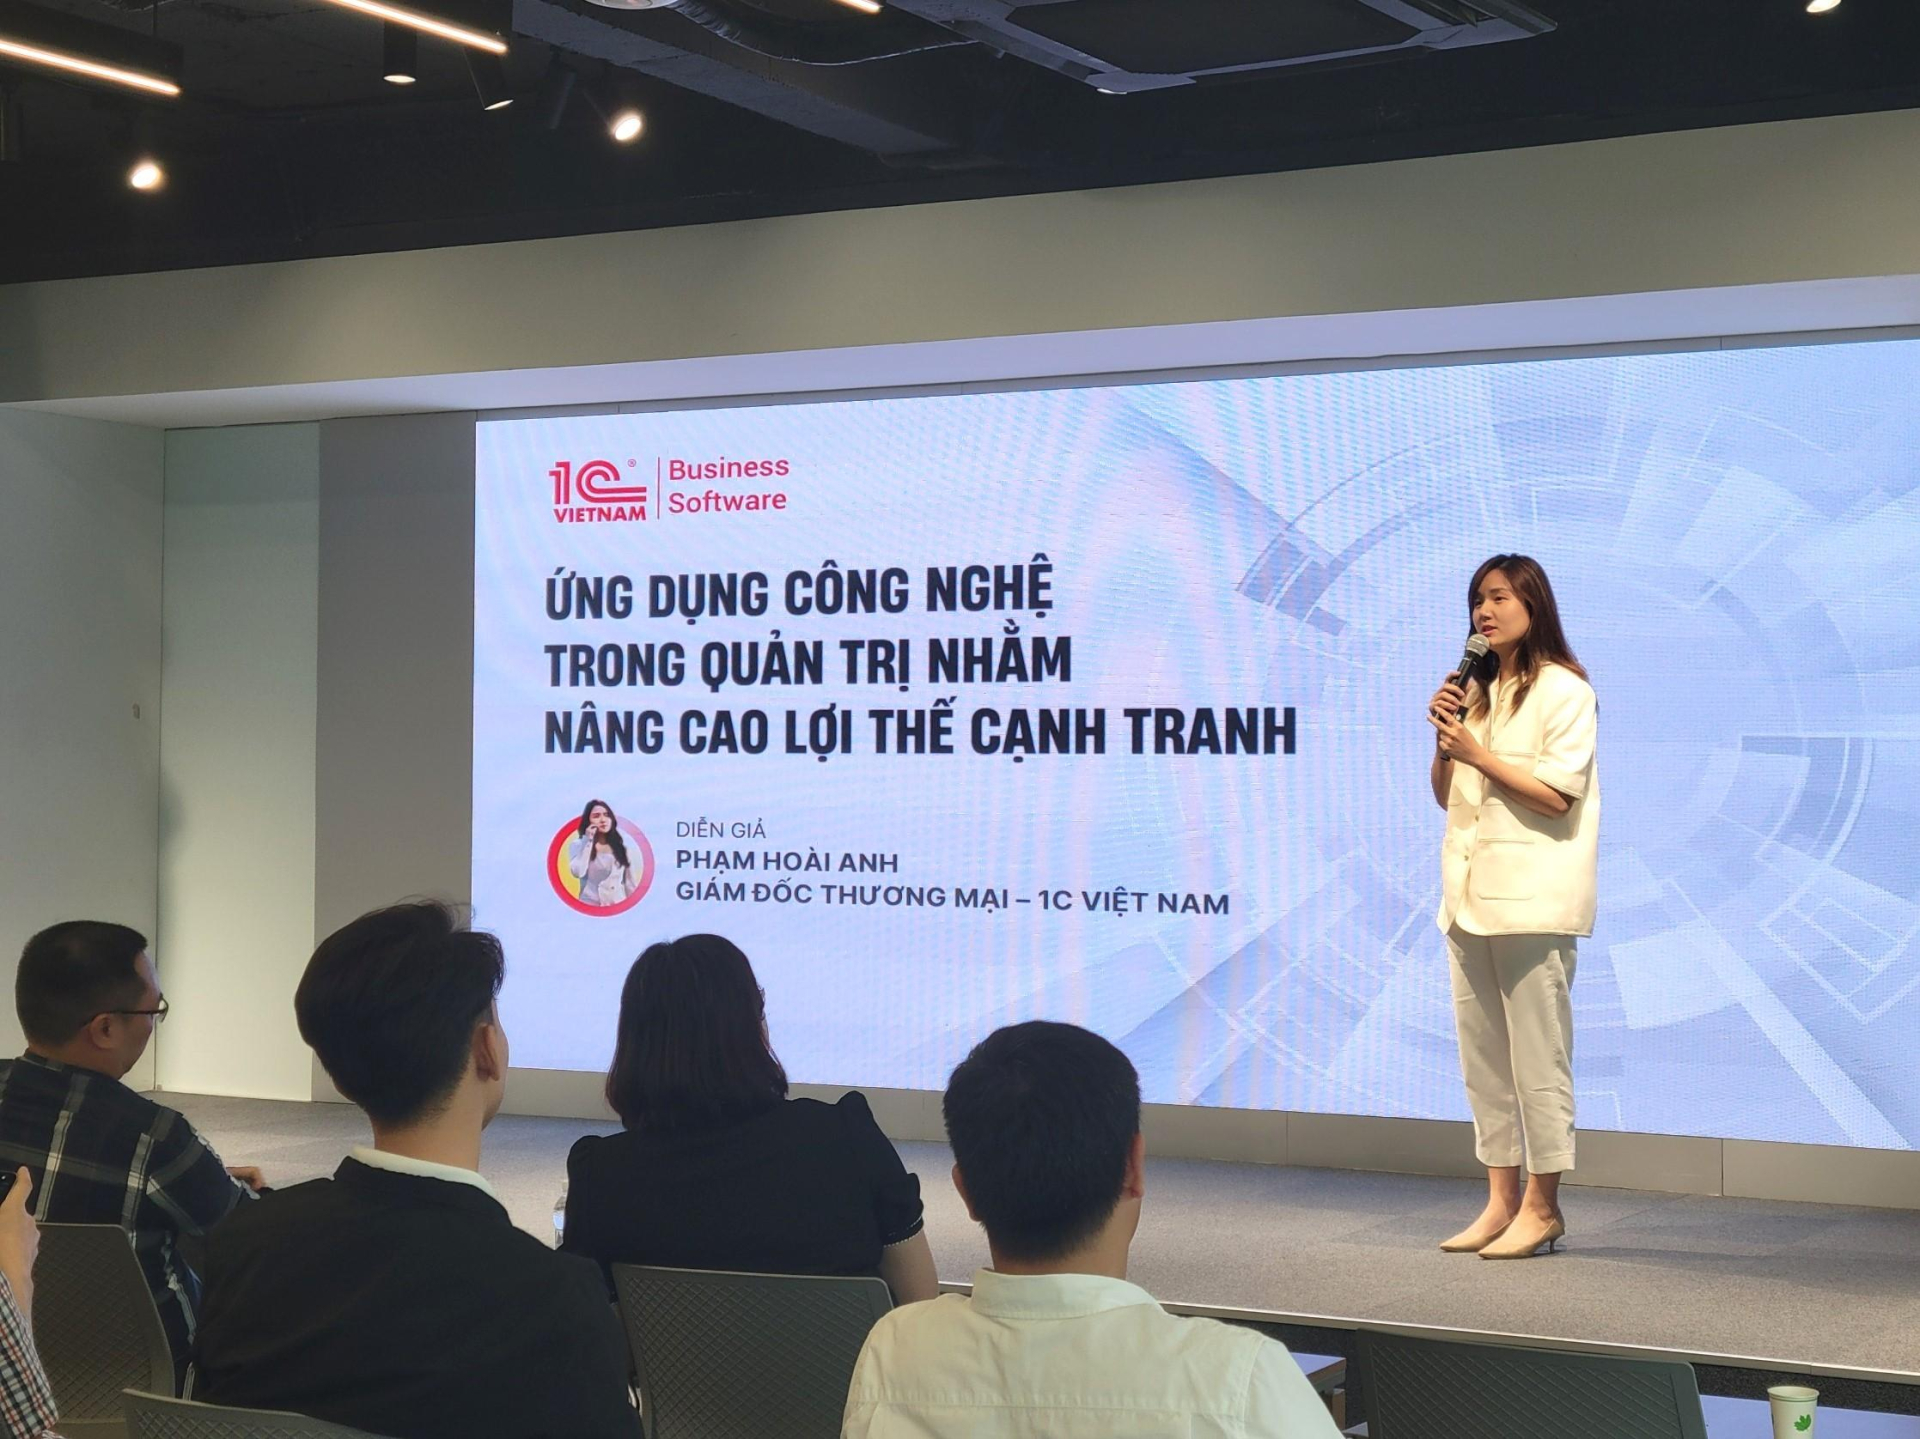 Bà Phạm Hoài Anh – Giám đốc Thương mại 1C Việt Nam chia sẻ tại hội thảo.